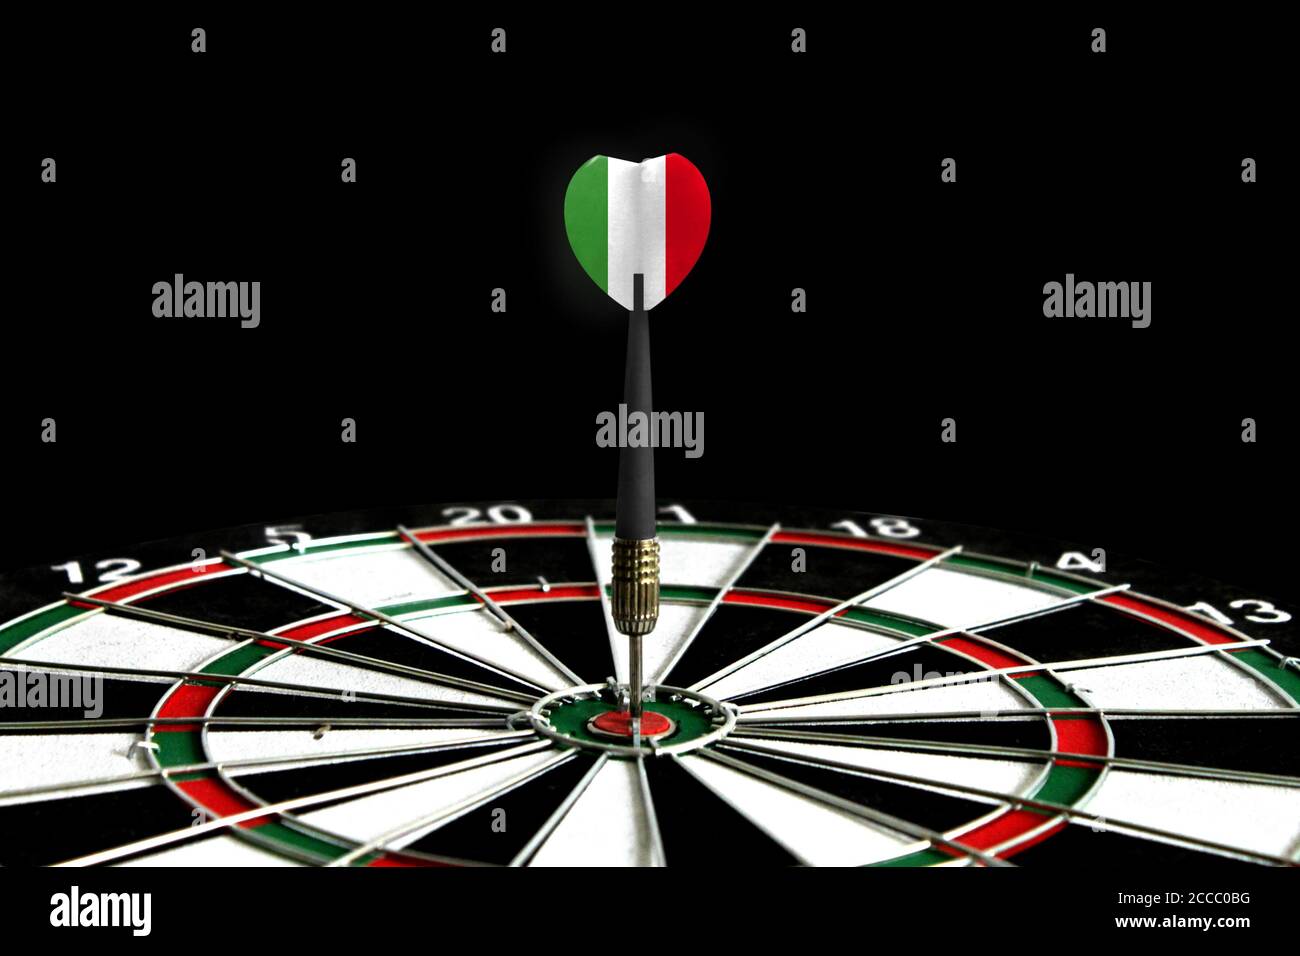 La bandera de Italia aparece en el juego de tablero de dardos, el concepto de lograr objetivos. Foto de stock